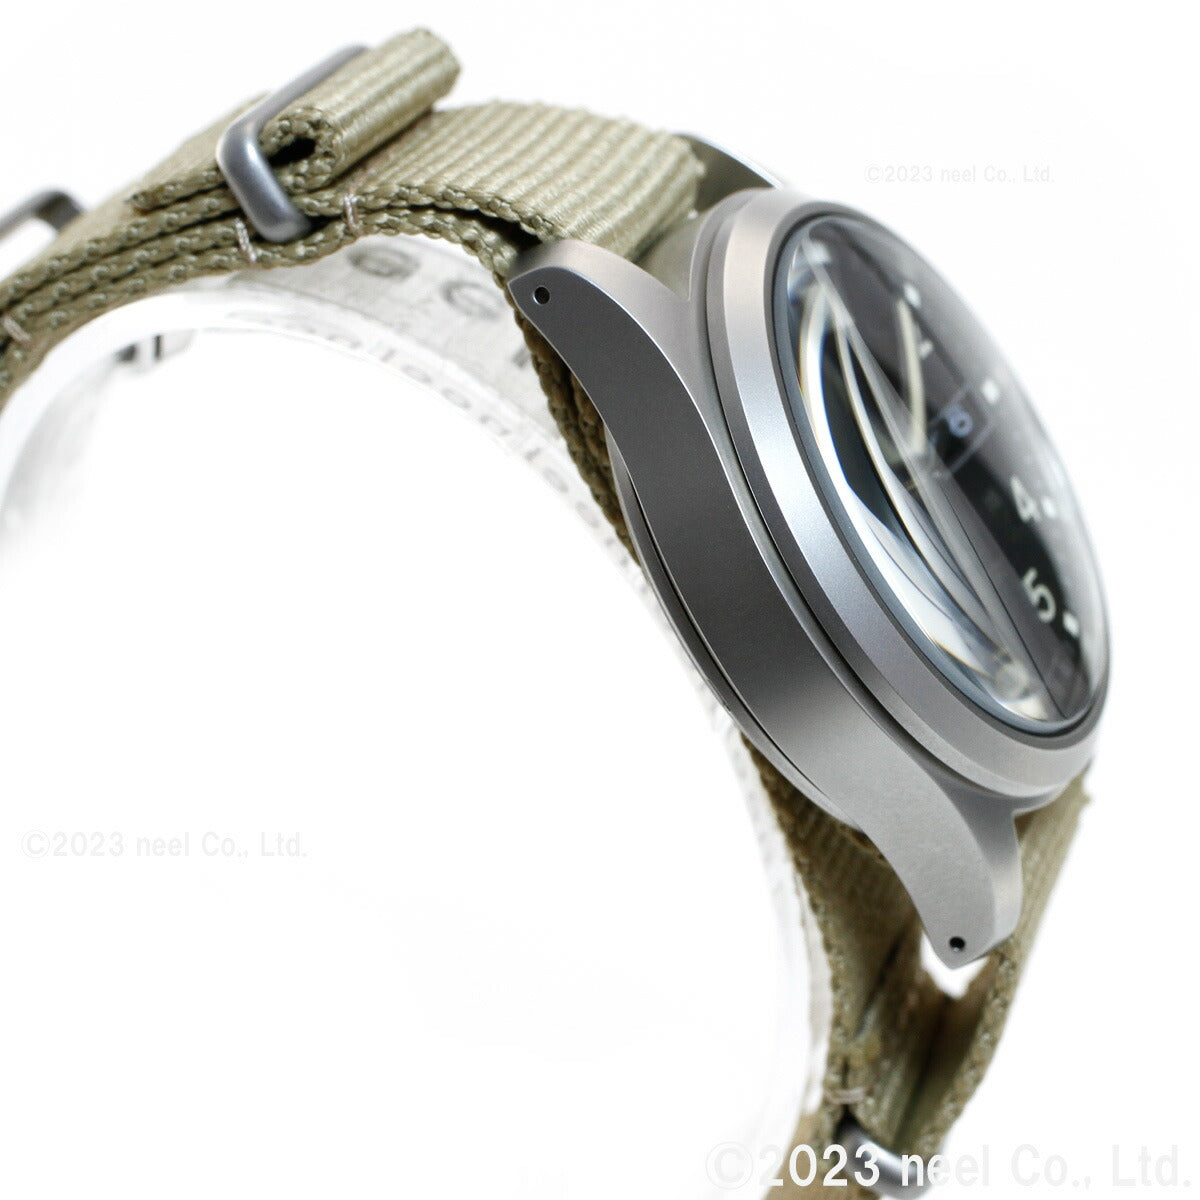 セイコー5 スポーツ SEIKO 5 SPORTS 自動巻き メカニカル 流通限定モデル 腕時計 メンズ セイコーファイブ スポーツ Sports SBSA117